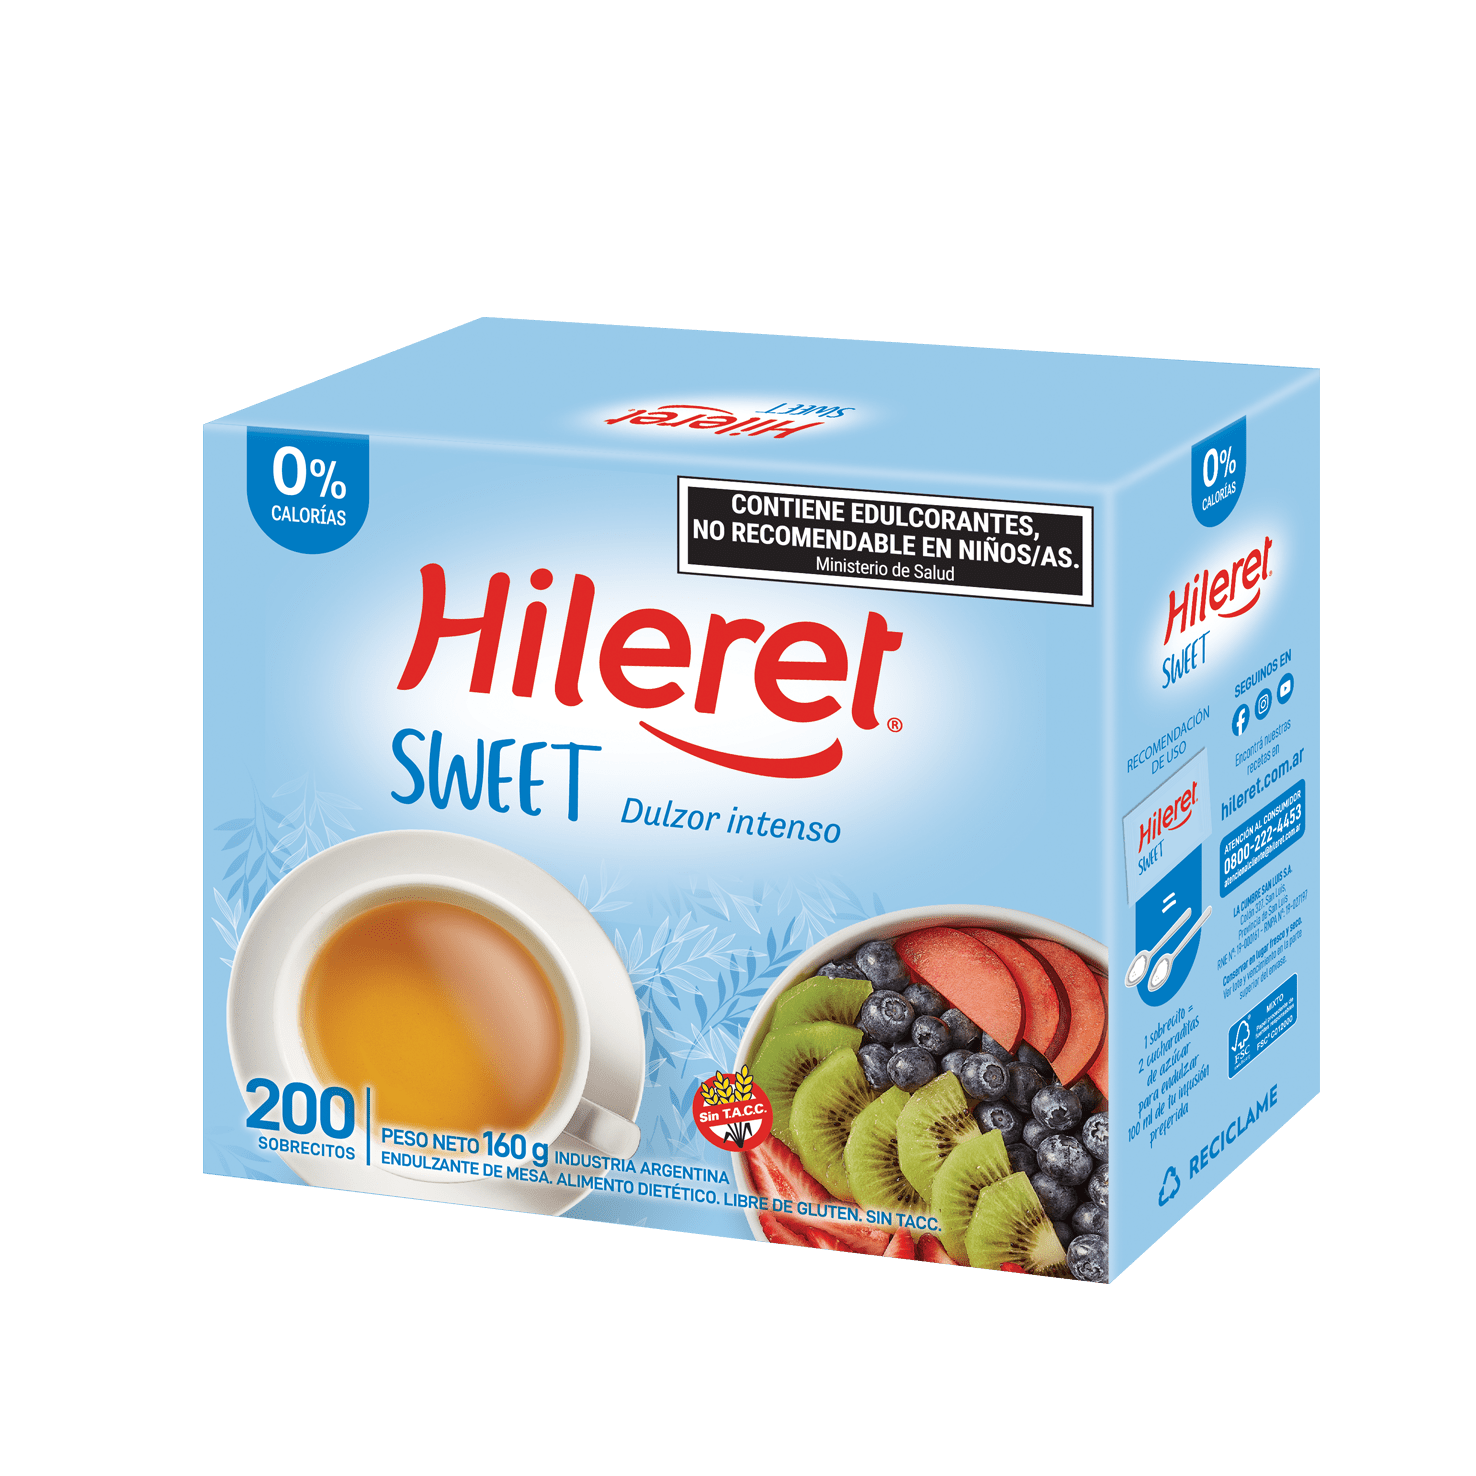 Hileret-Sweet-200 sobres